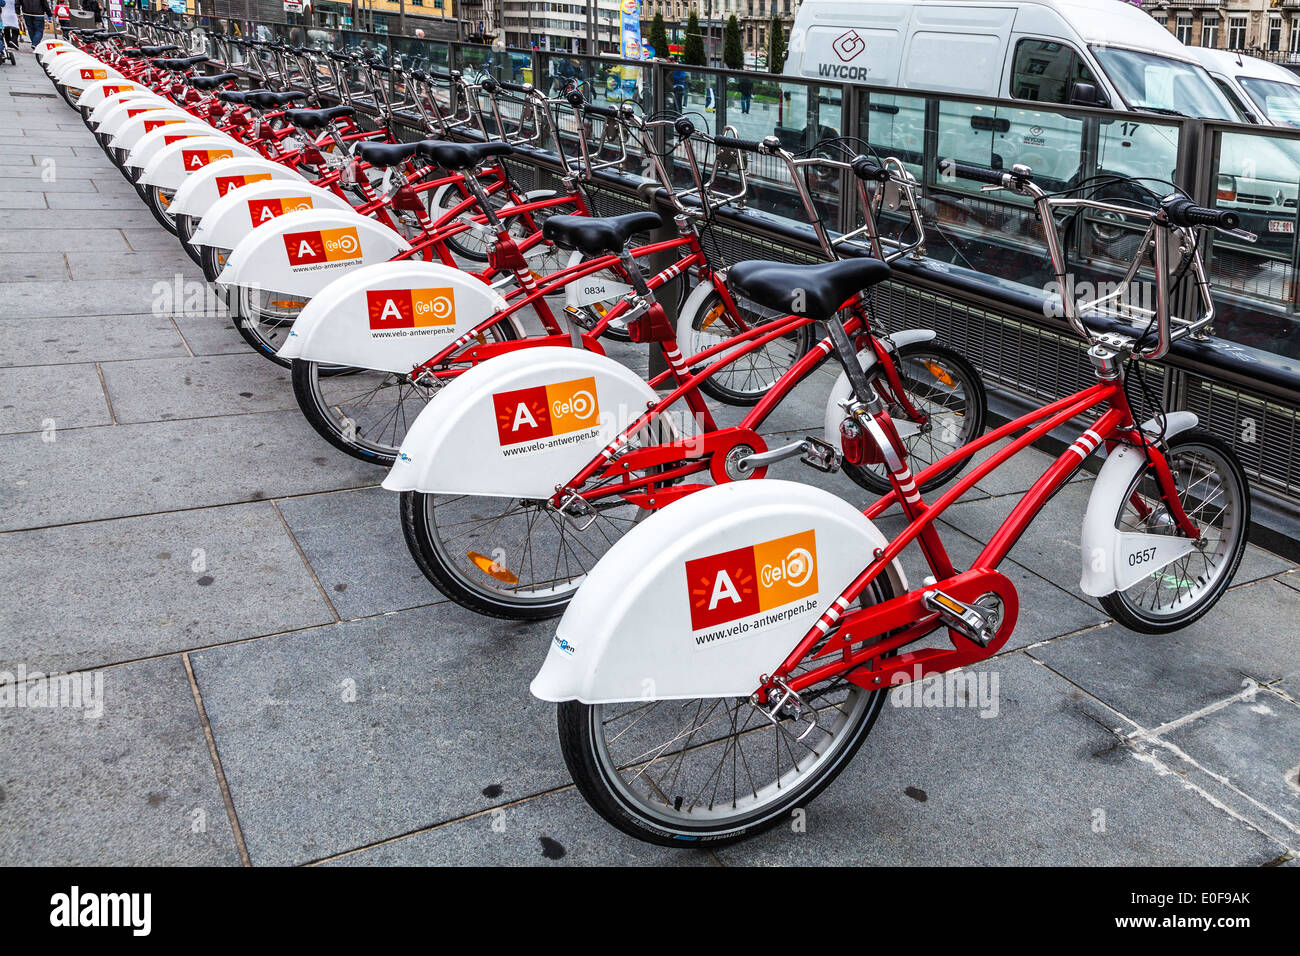 Una fila di velo le biciclette a noleggio nella città di Anversa. Foto Stock